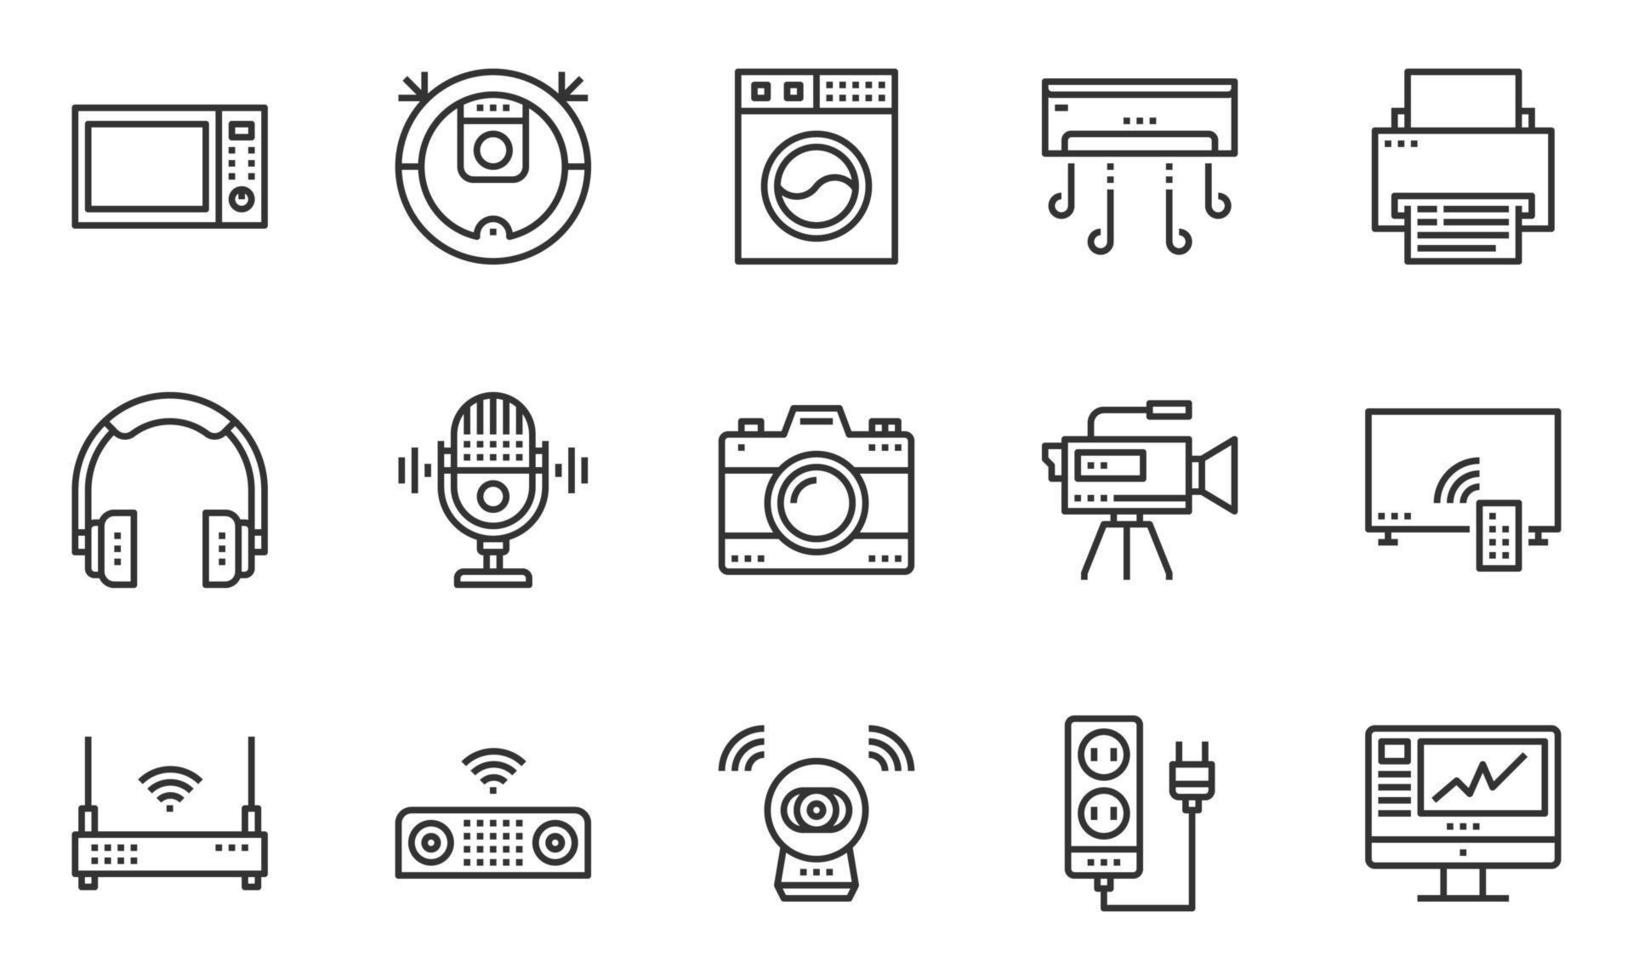 vetor de ícones de dispositivos eletrônicos domésticos, câmera, fone de ouvido, multimídia